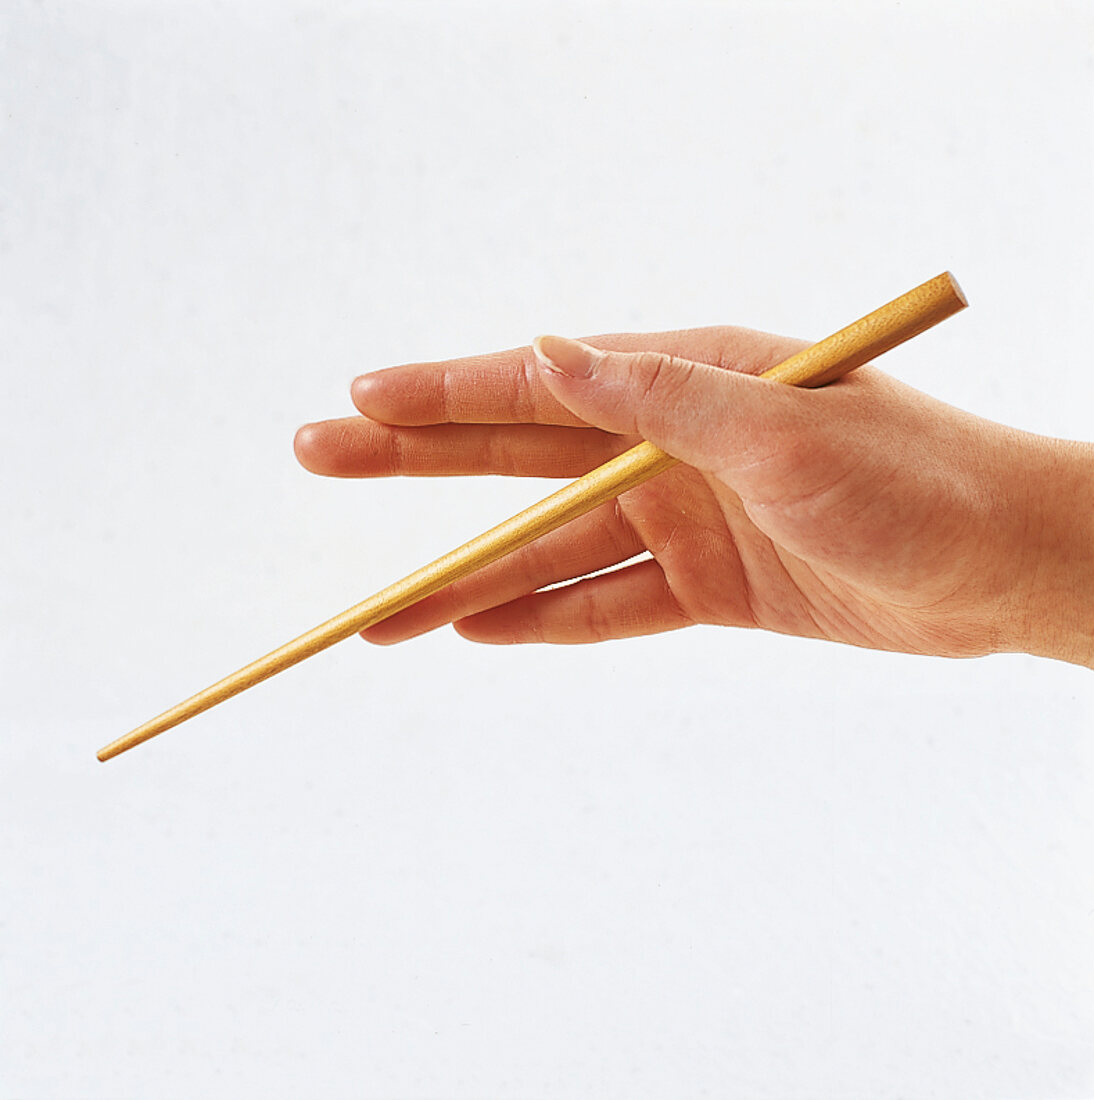 Sushi - Festklemmen von Essstäbc hen zwischen Daumen und Zeigefinger